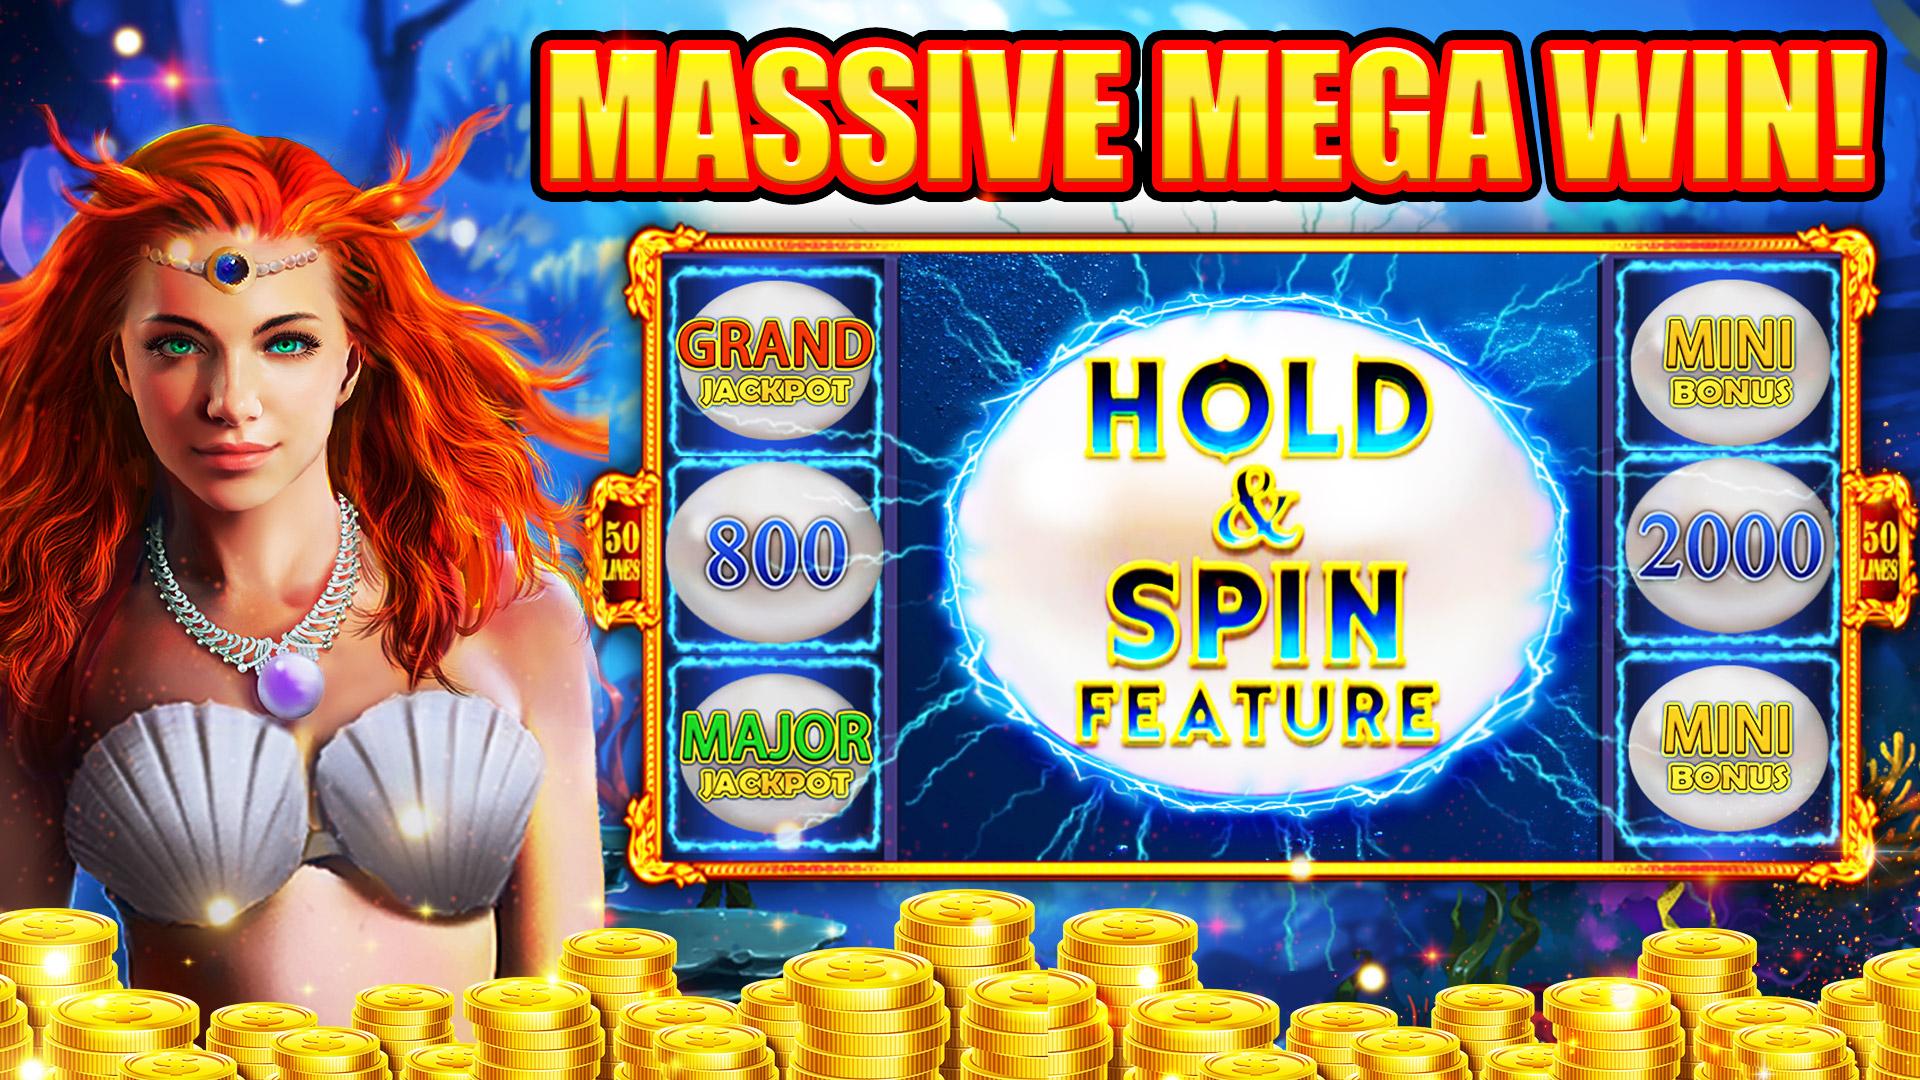 Grand Jackpot Slots Free Casino Machine Games 1.0.50 Screenshot 23